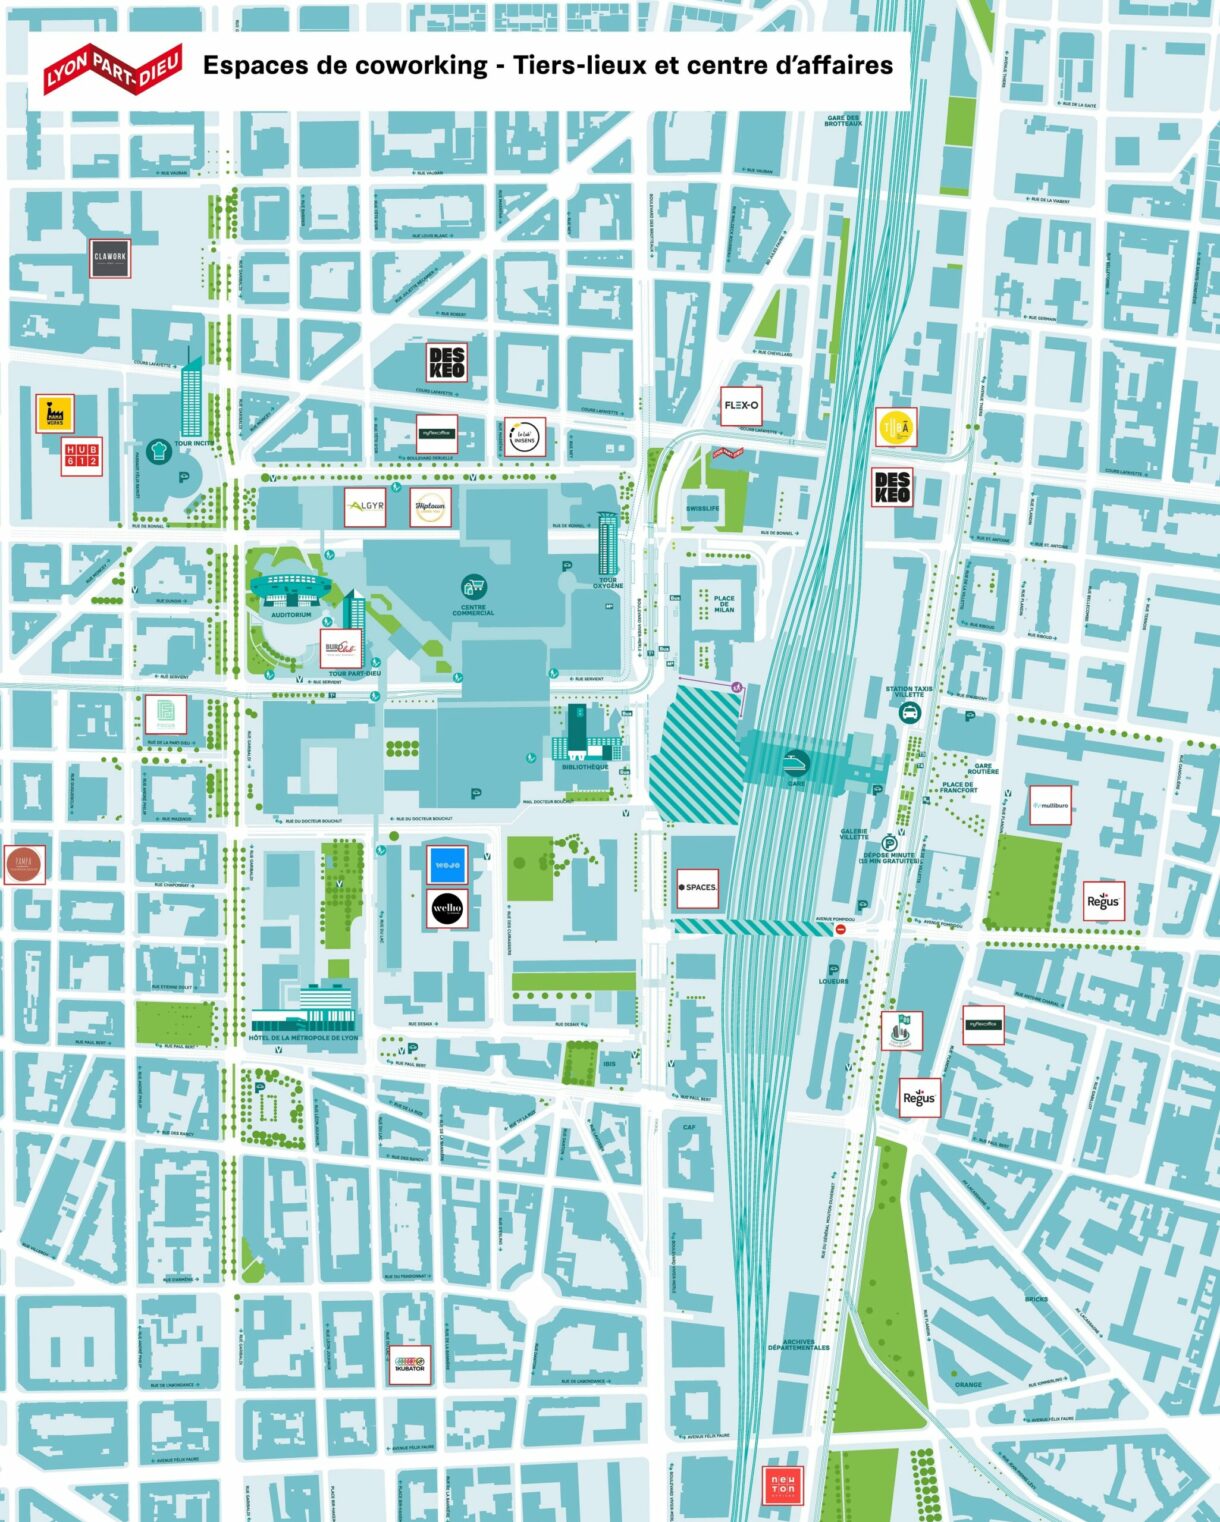 carte du quartier de la Part-Dieu localisant les espaces de coworking, tiers-lieux et centres d'affaires